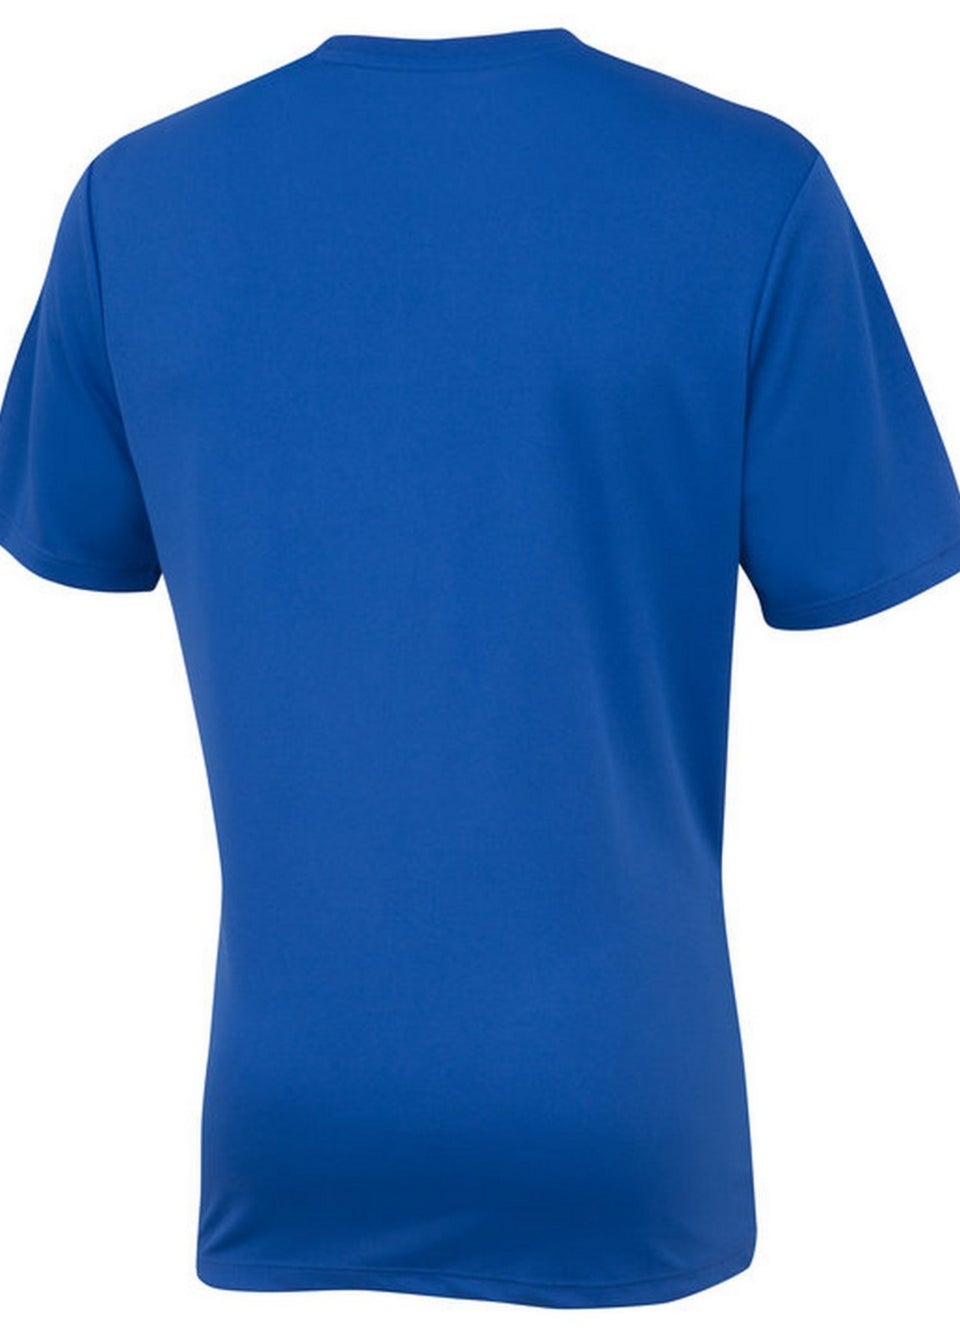 Umbro Midnight Blue Club Short-Sleeved Jersey